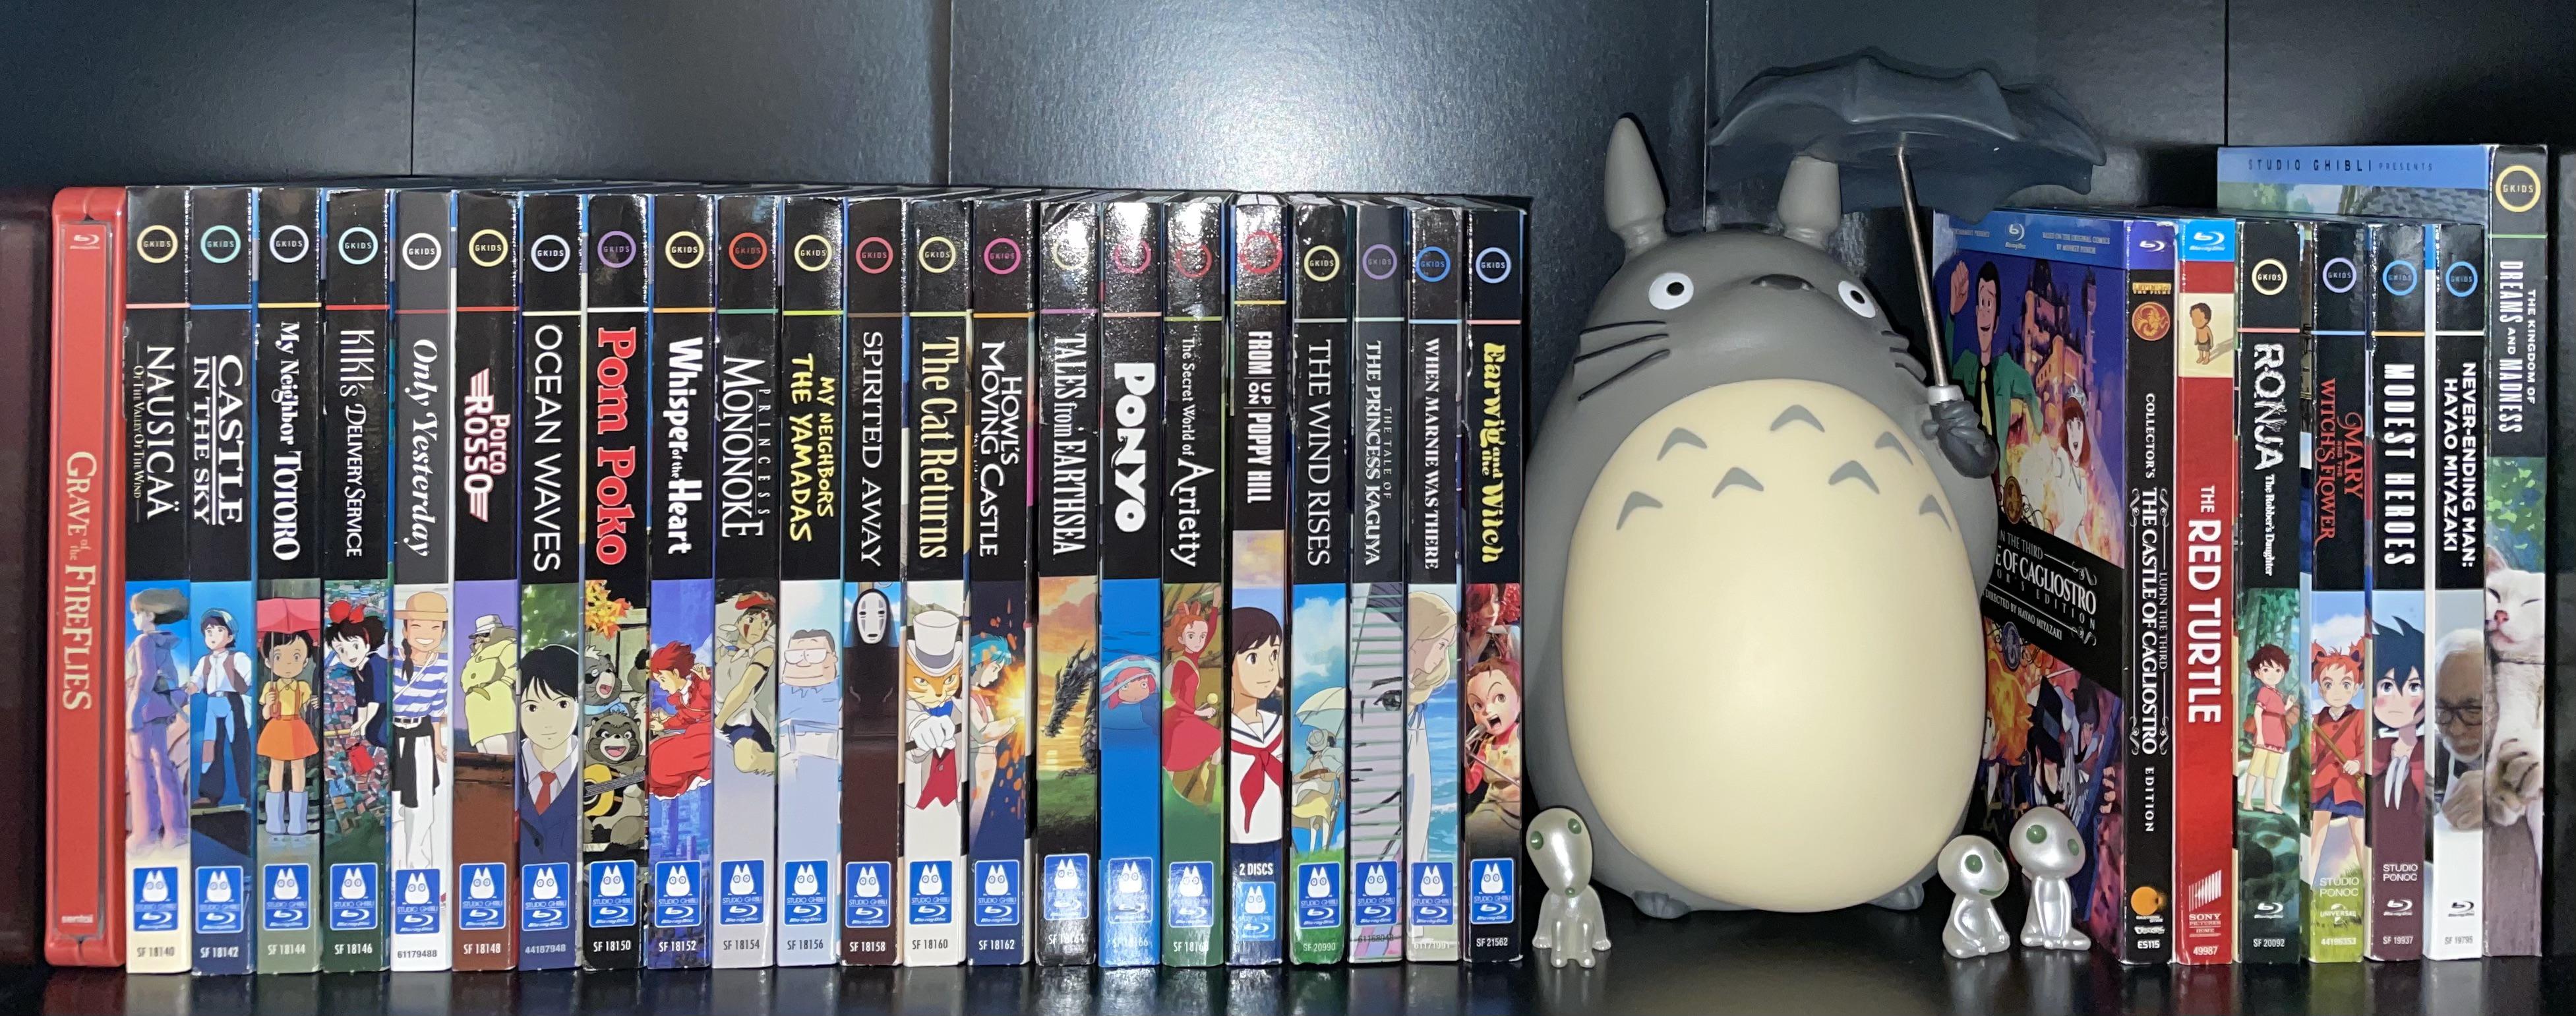 Mon Voisin Totoro + Pompoko - DVD – MediaMarkt Luxembourg